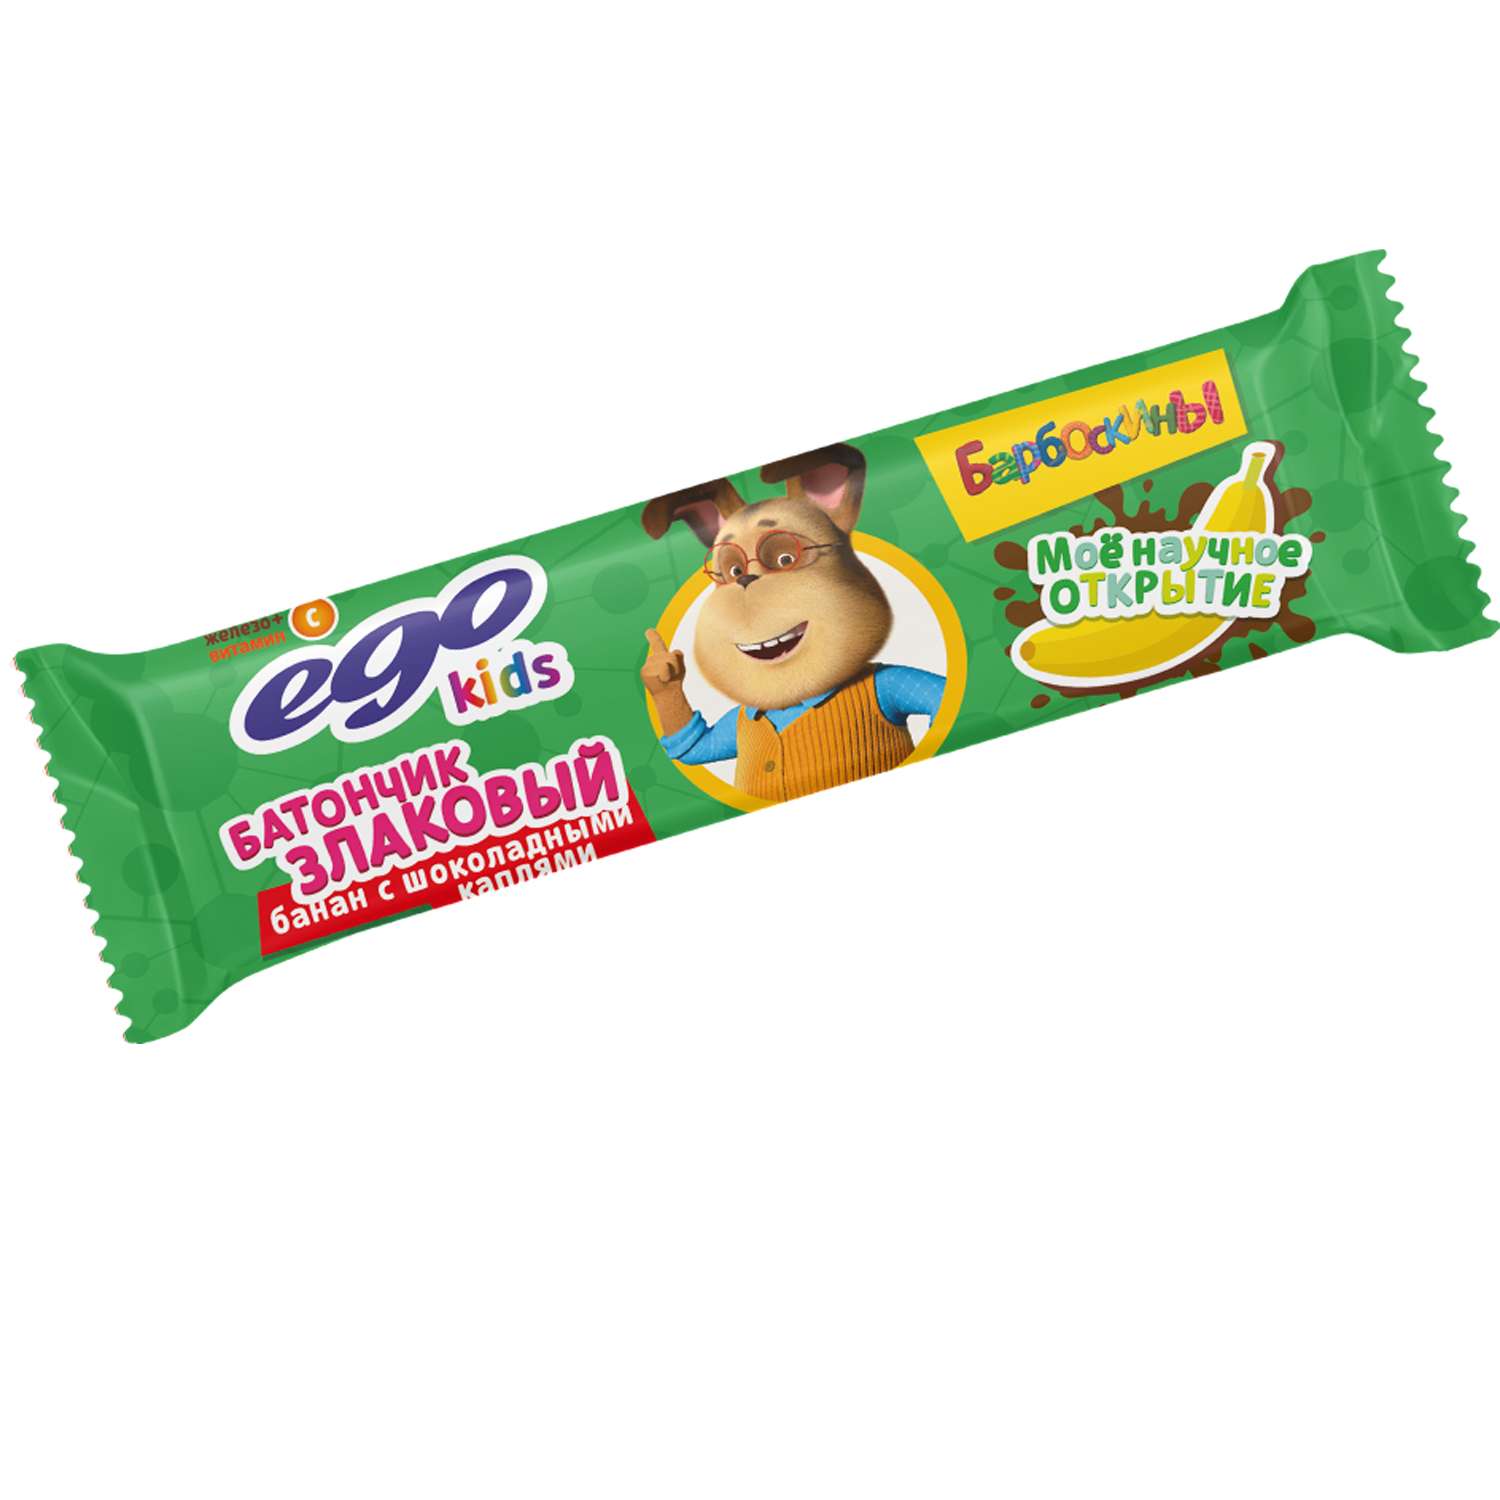 Батончик мюсли Ego kids банан с шоколадными каплями с витамином С 25г - фото 1